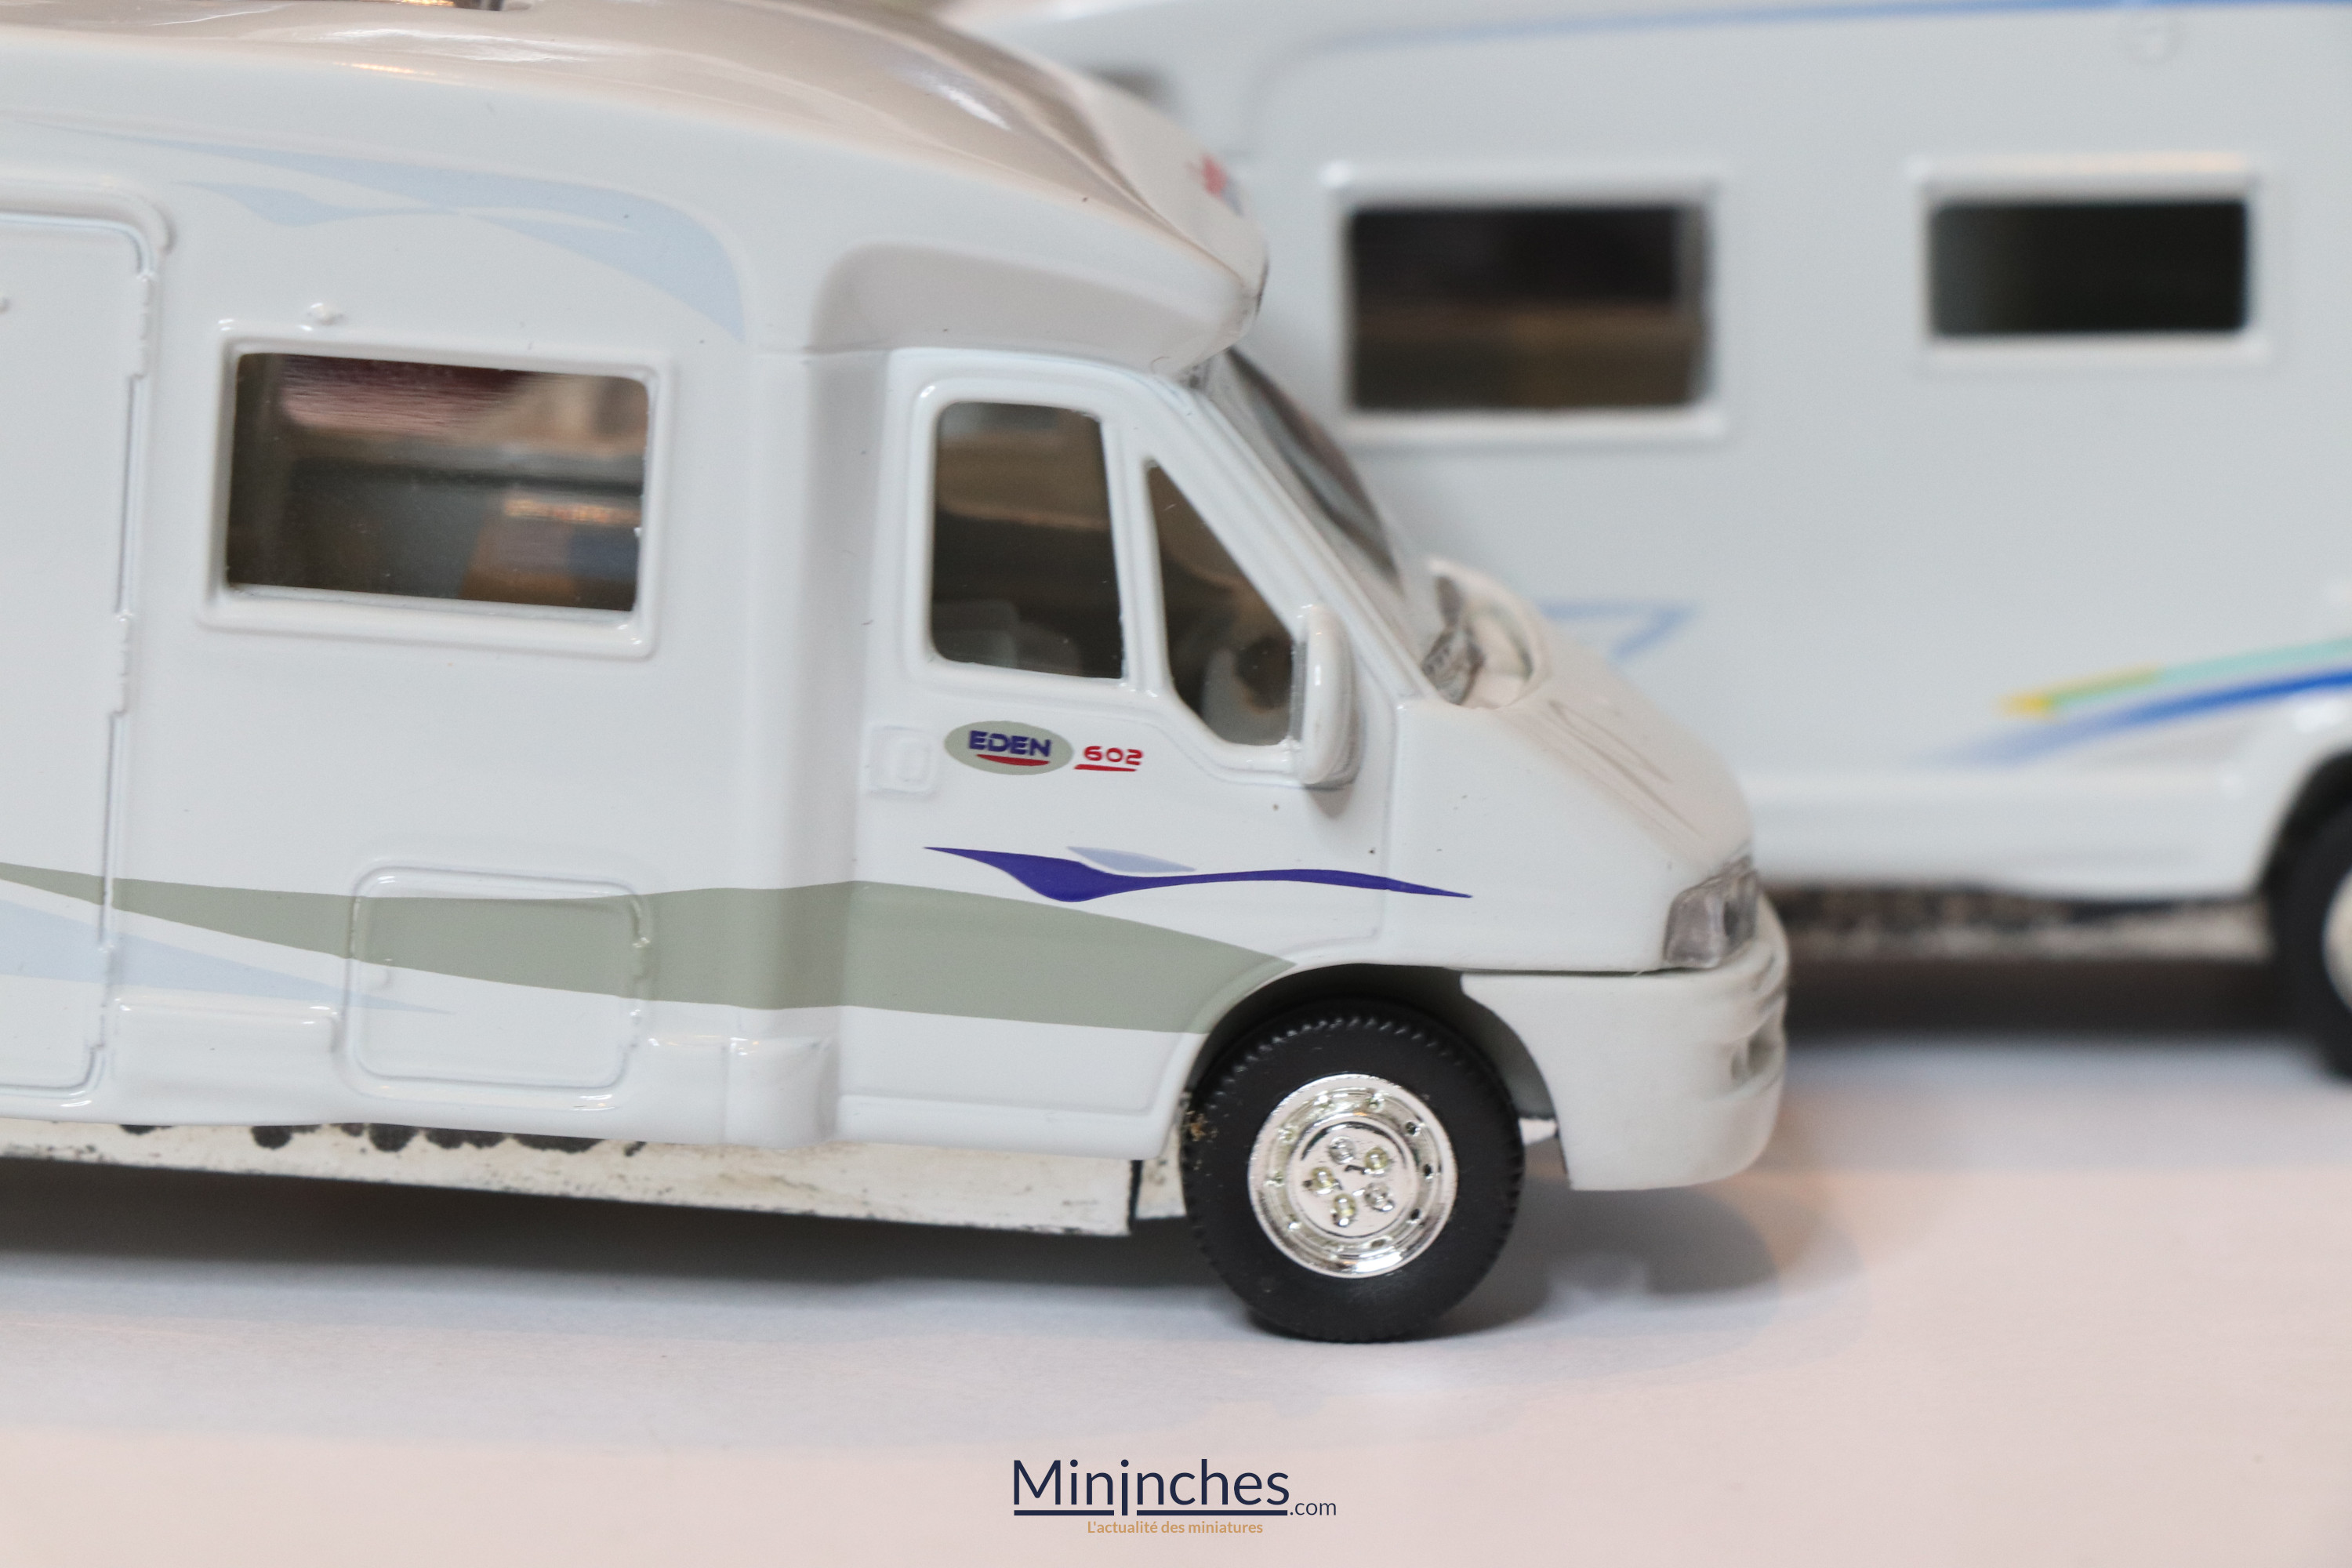 L'épopée Norev - Les camping-car Norev 3 inches - Mininches